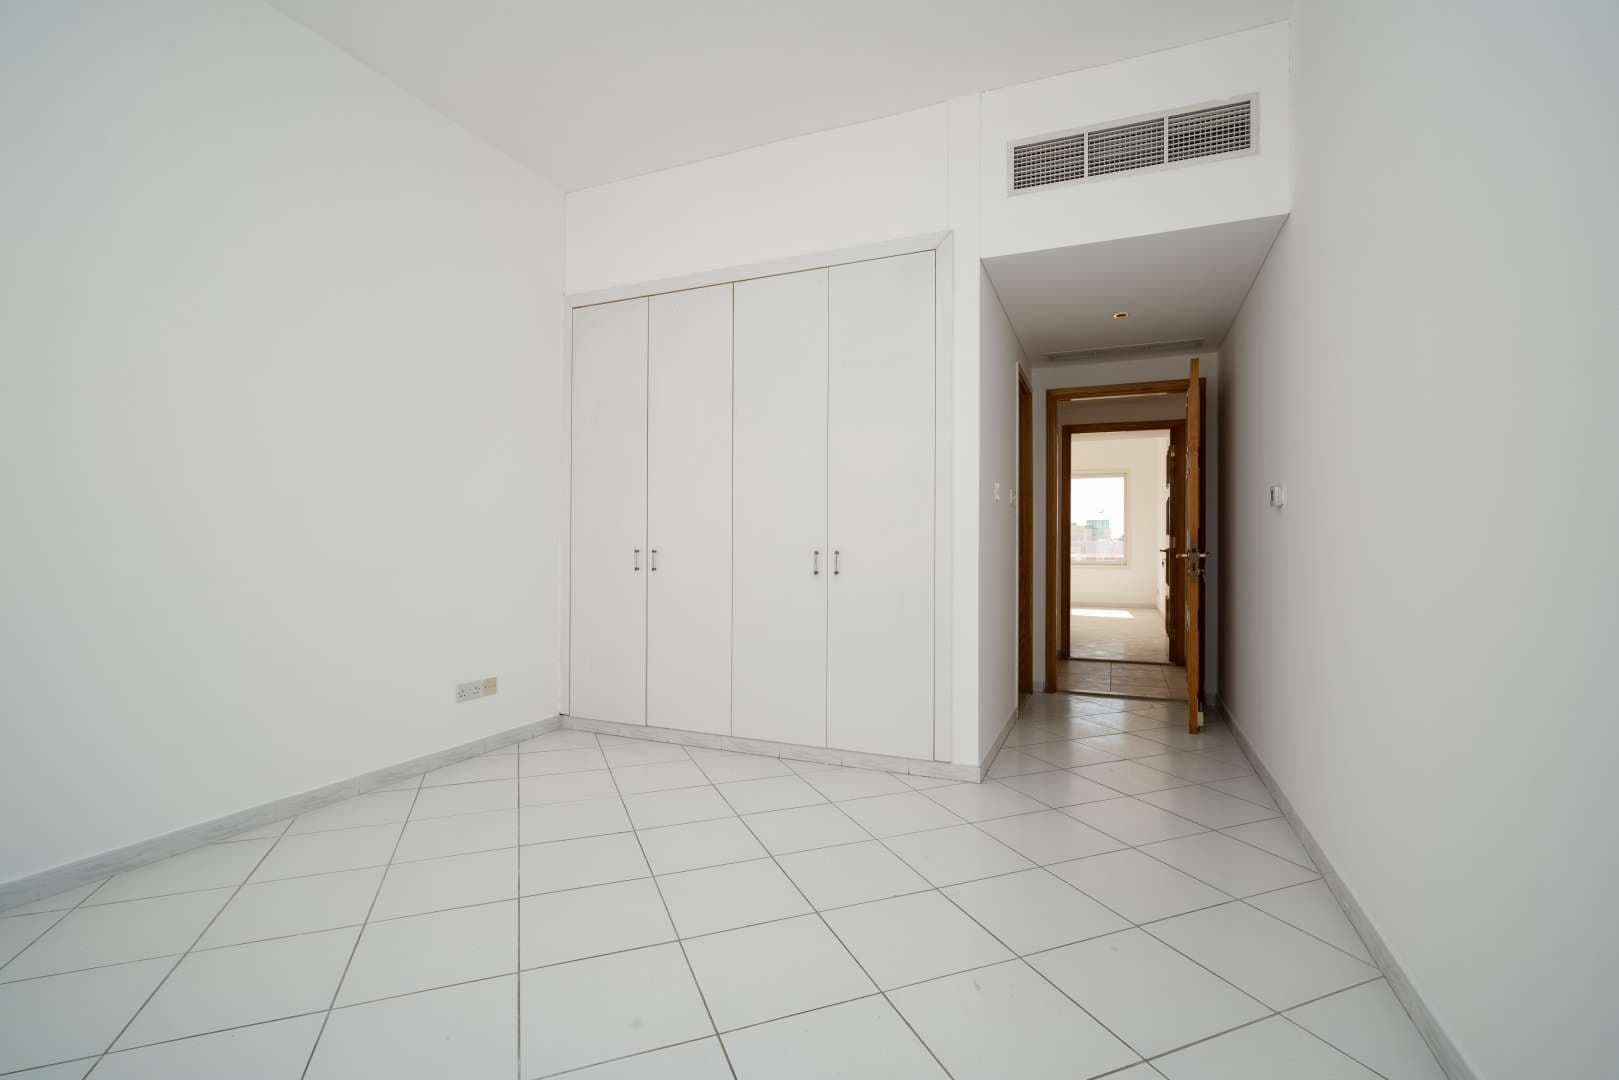 4 Bedroom Villa For Rent Al Wasl Lp05131 275ac675c32e1600.jpg